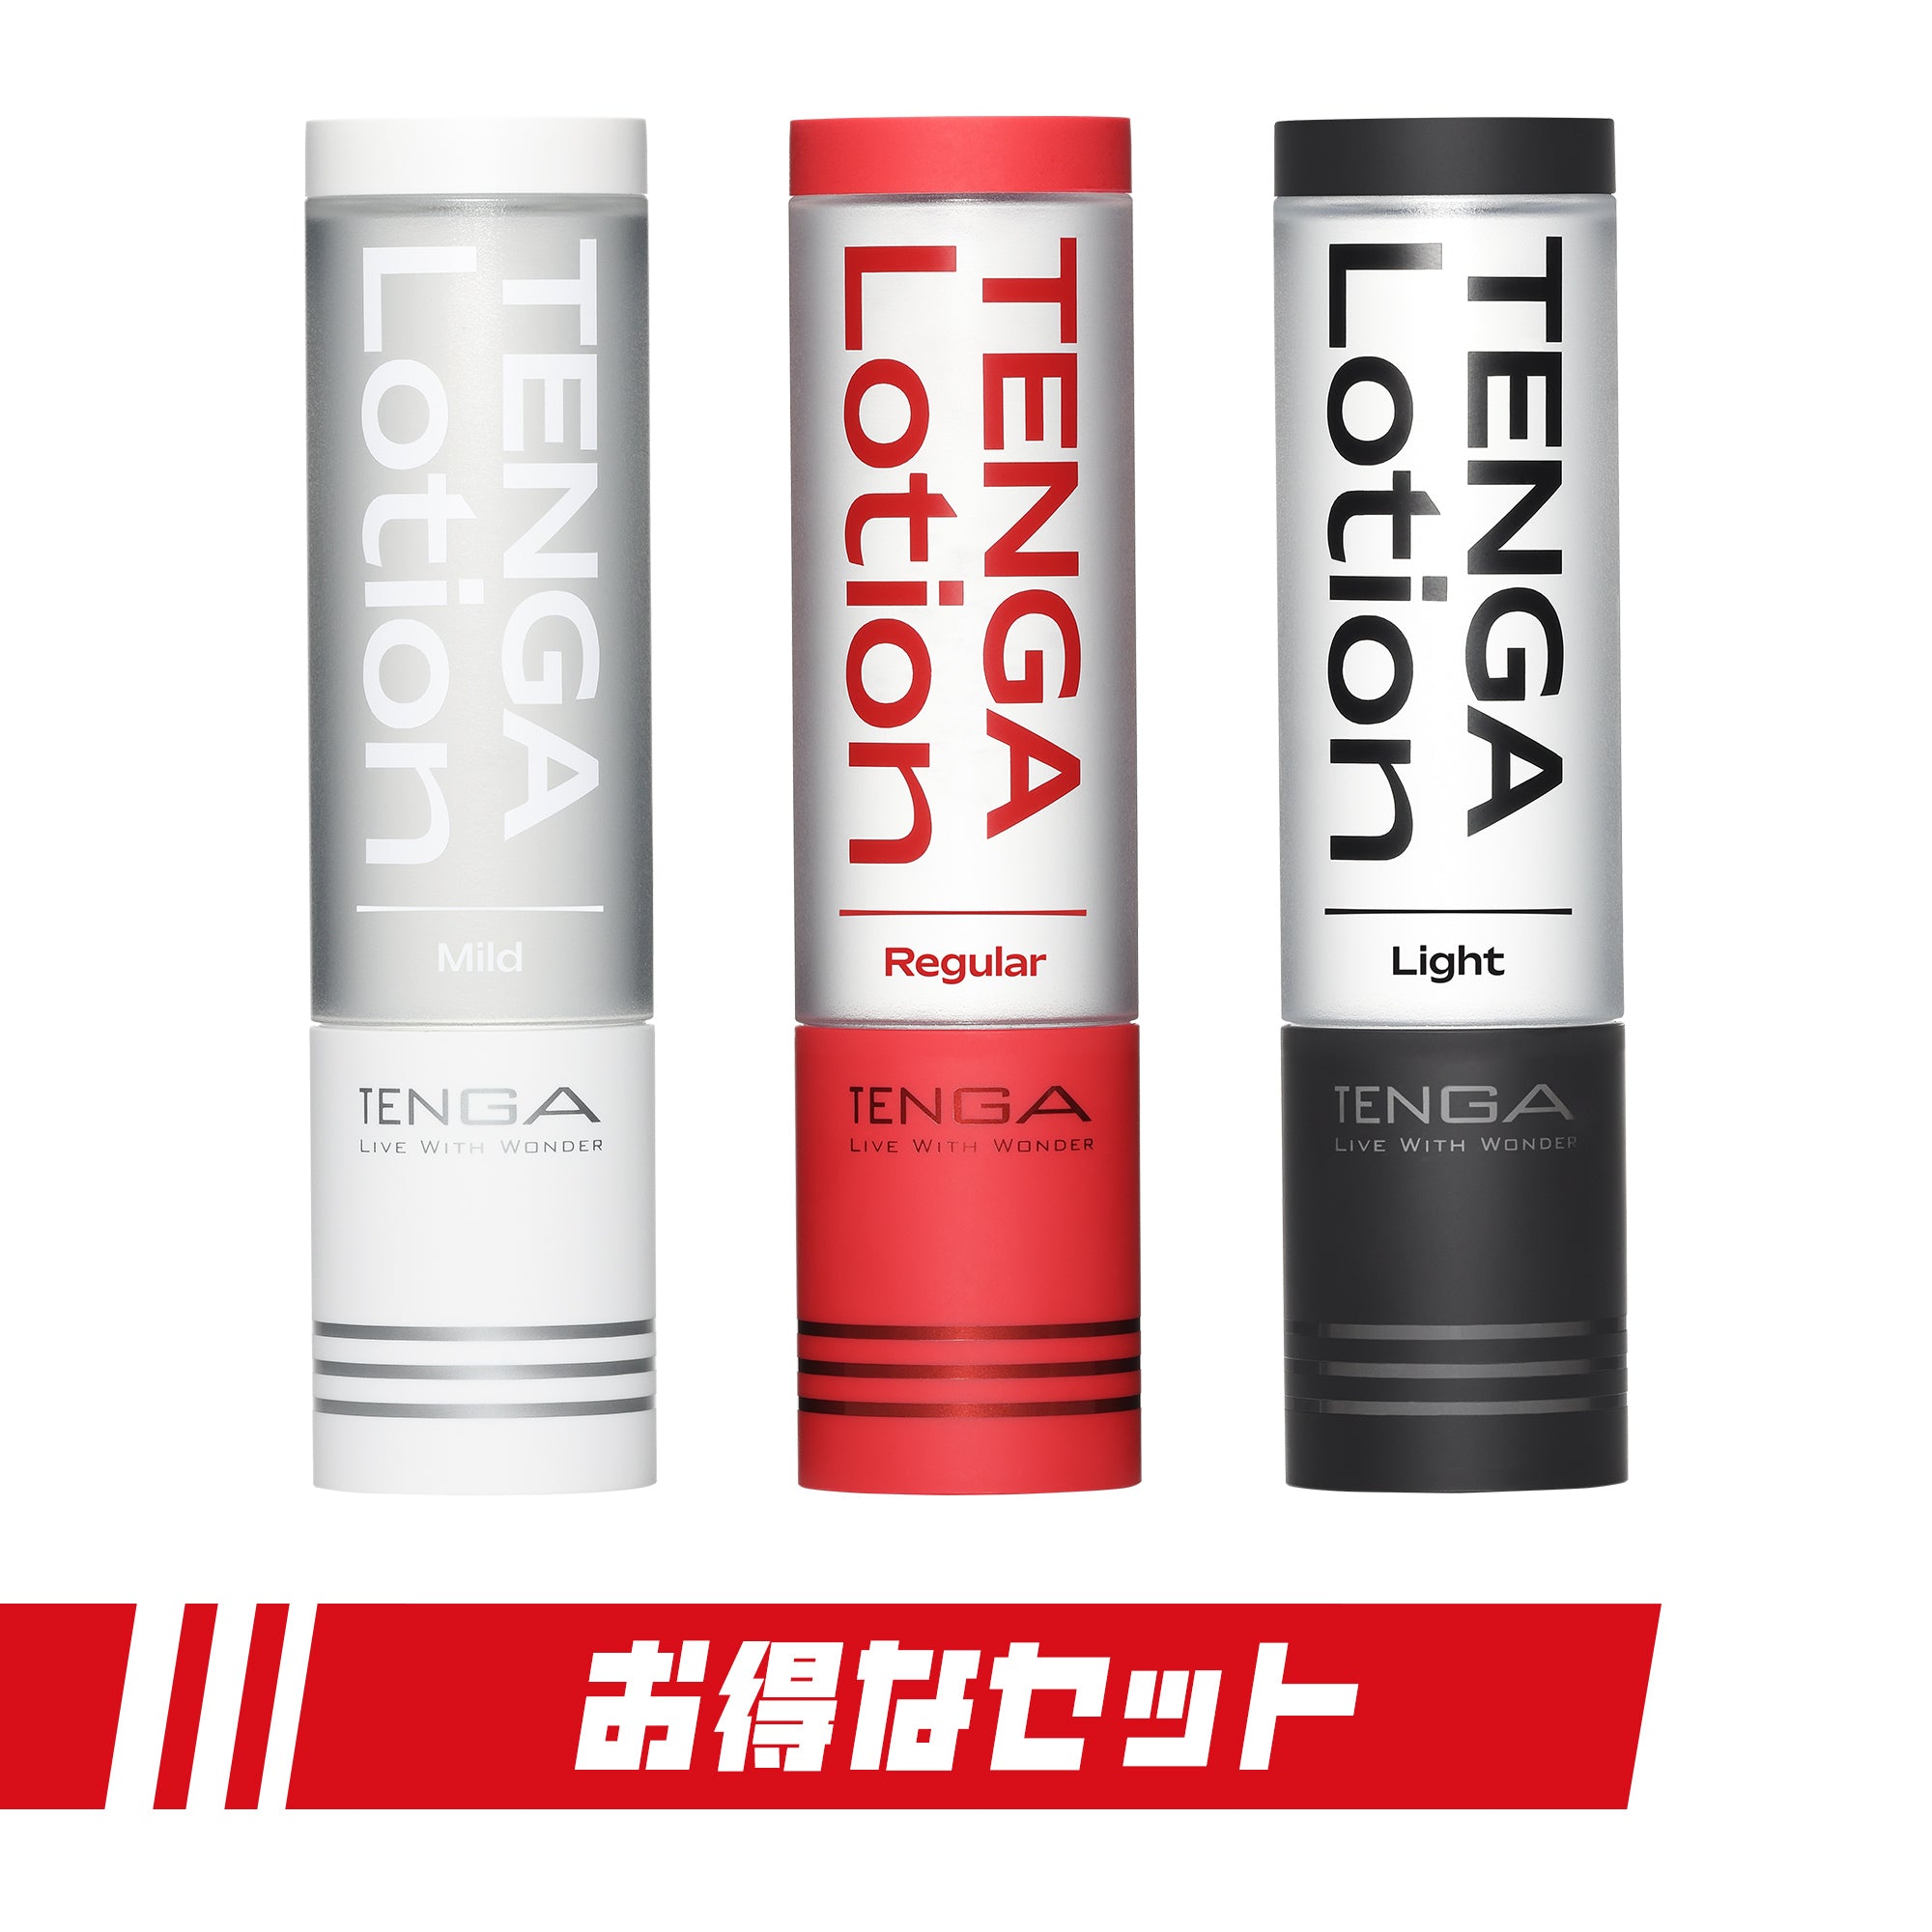 TENGA LOTION 水性潤滑劑 完全套裝-TENGA-TENGA 香港網上專門店 - 專營 TENGA 飛機杯及潤滑劑